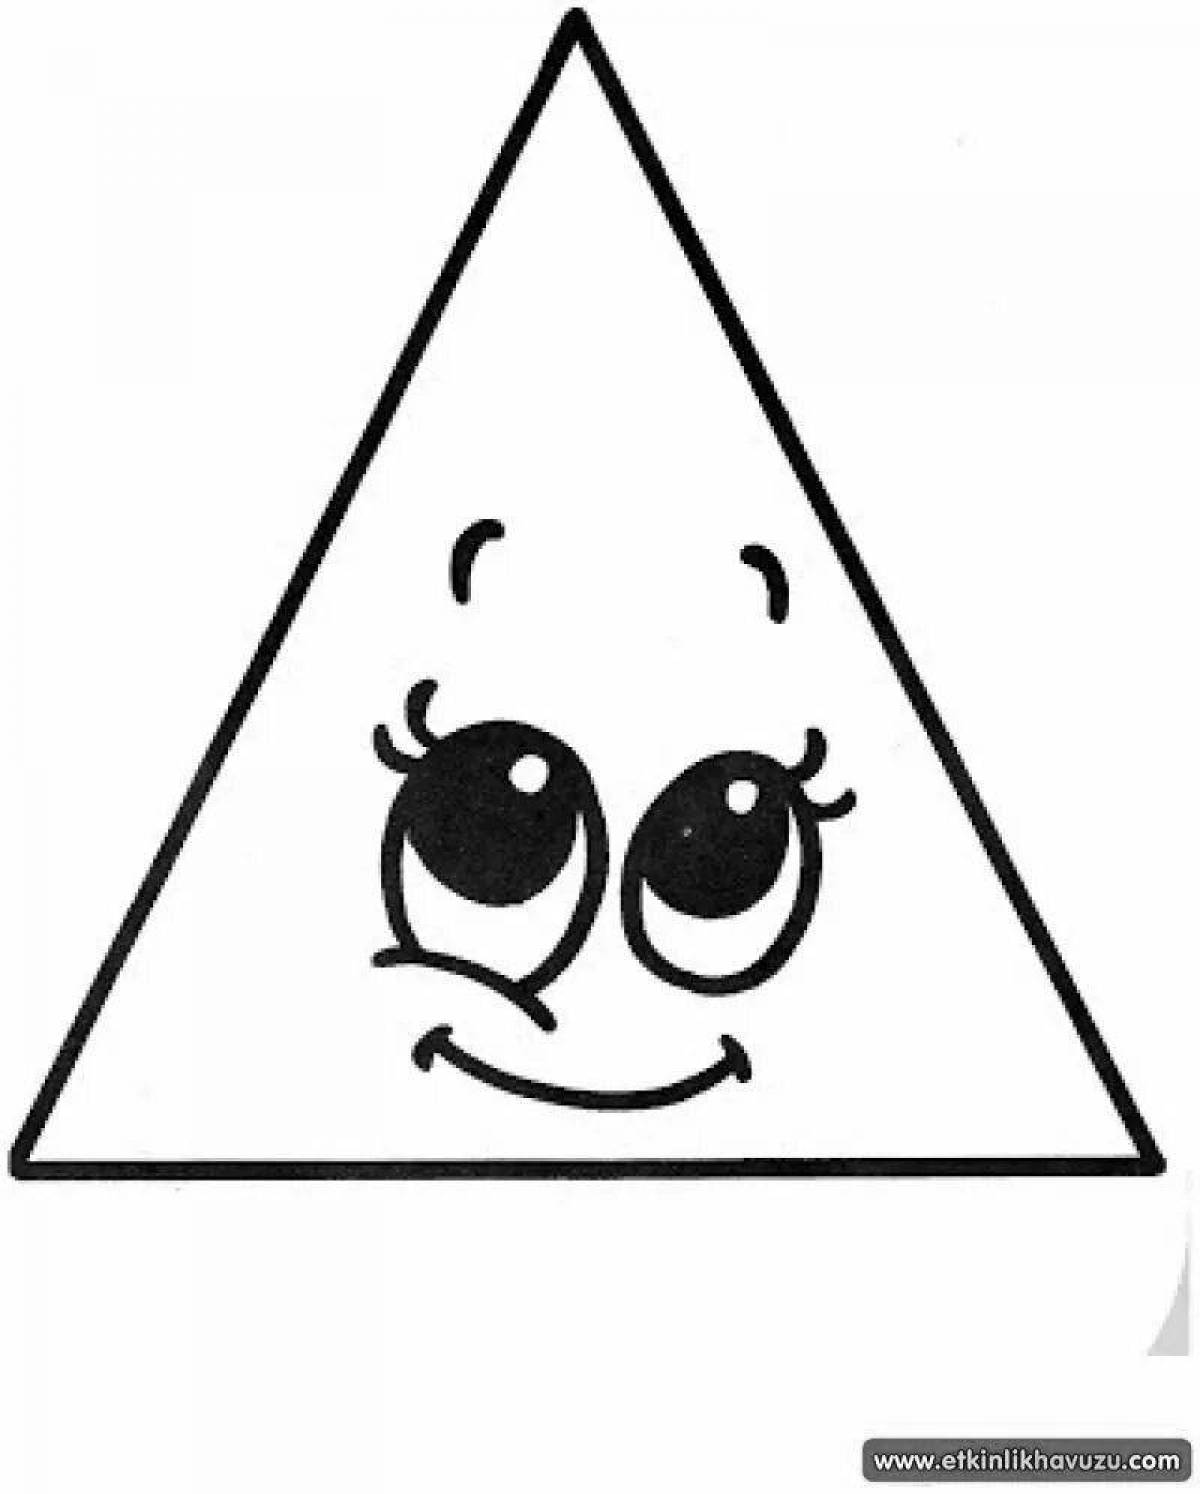 Треугольник для детей